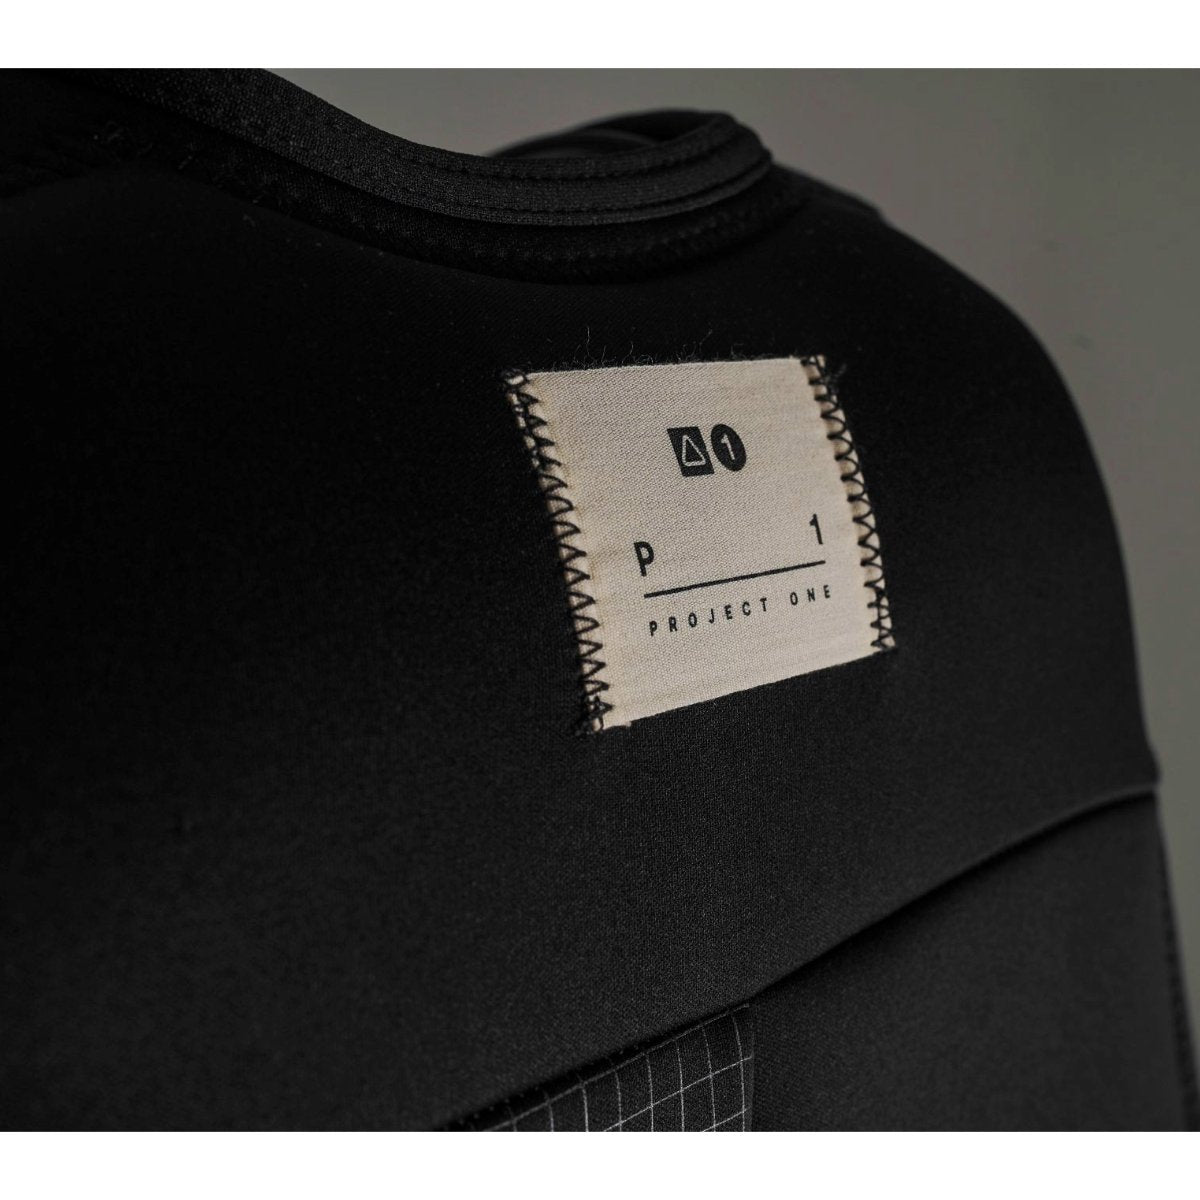 Follow Project One Mens Comp Wake Vest in Black - BoardCo